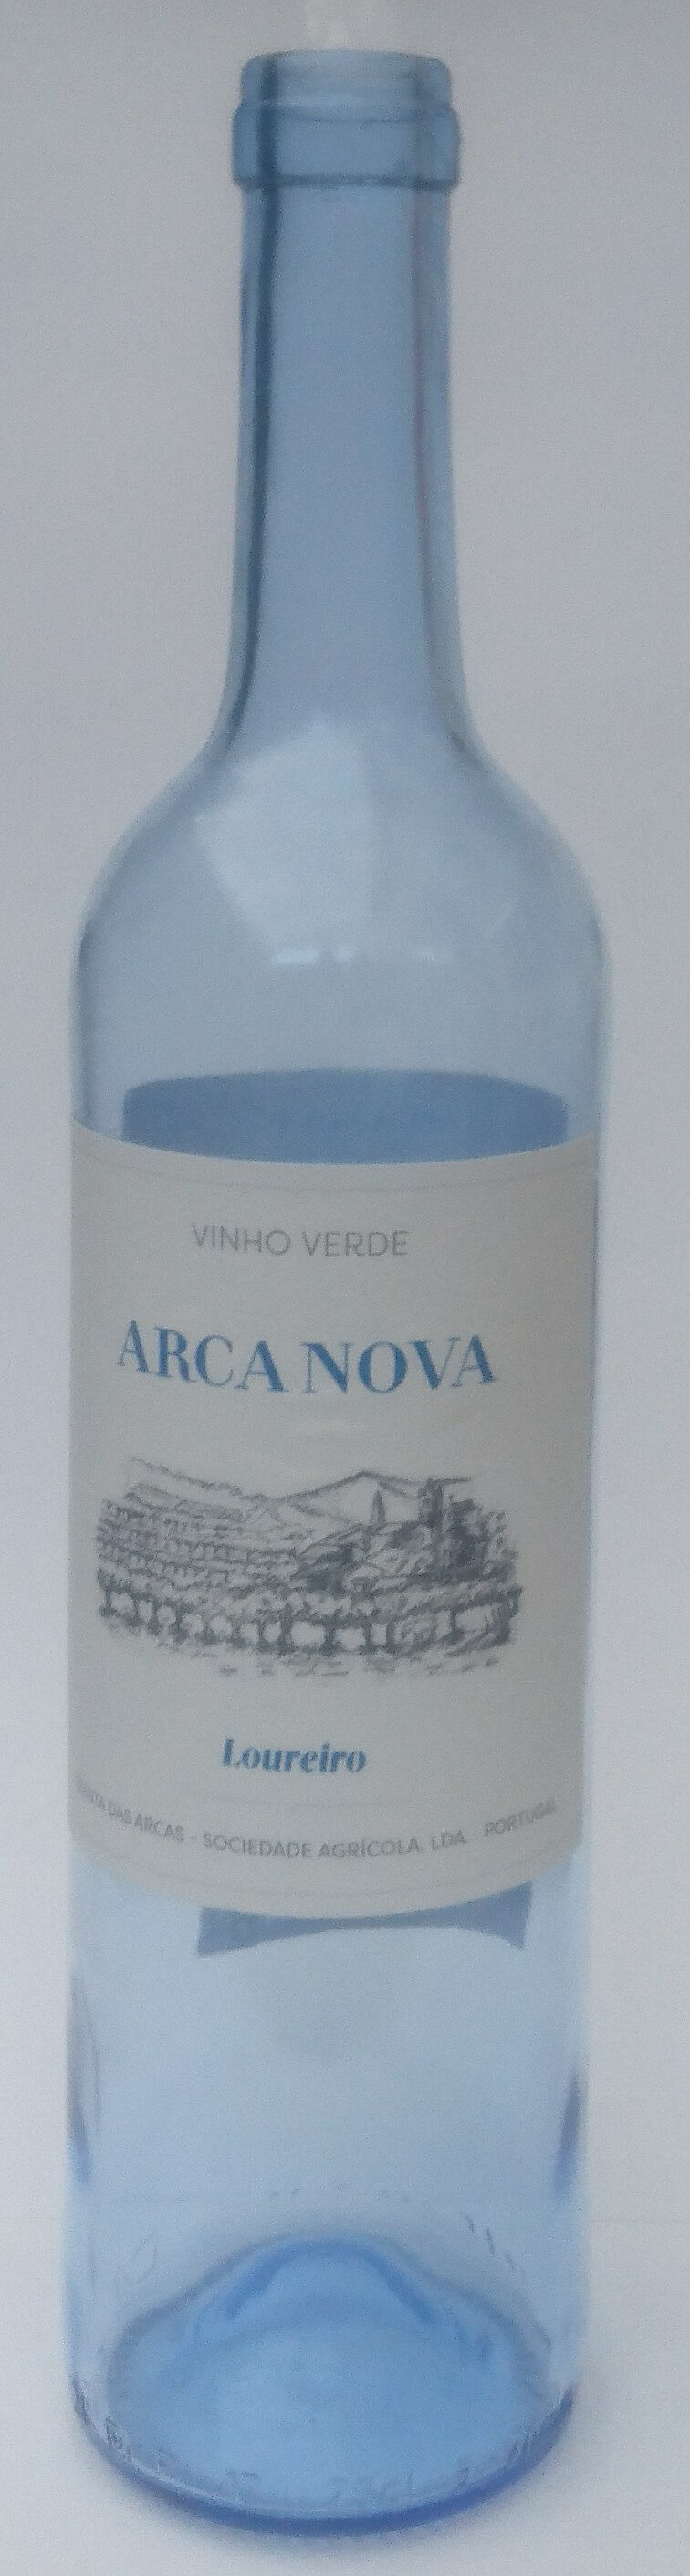 Vinho Verde Arca Nova Loureiro - Product - pt